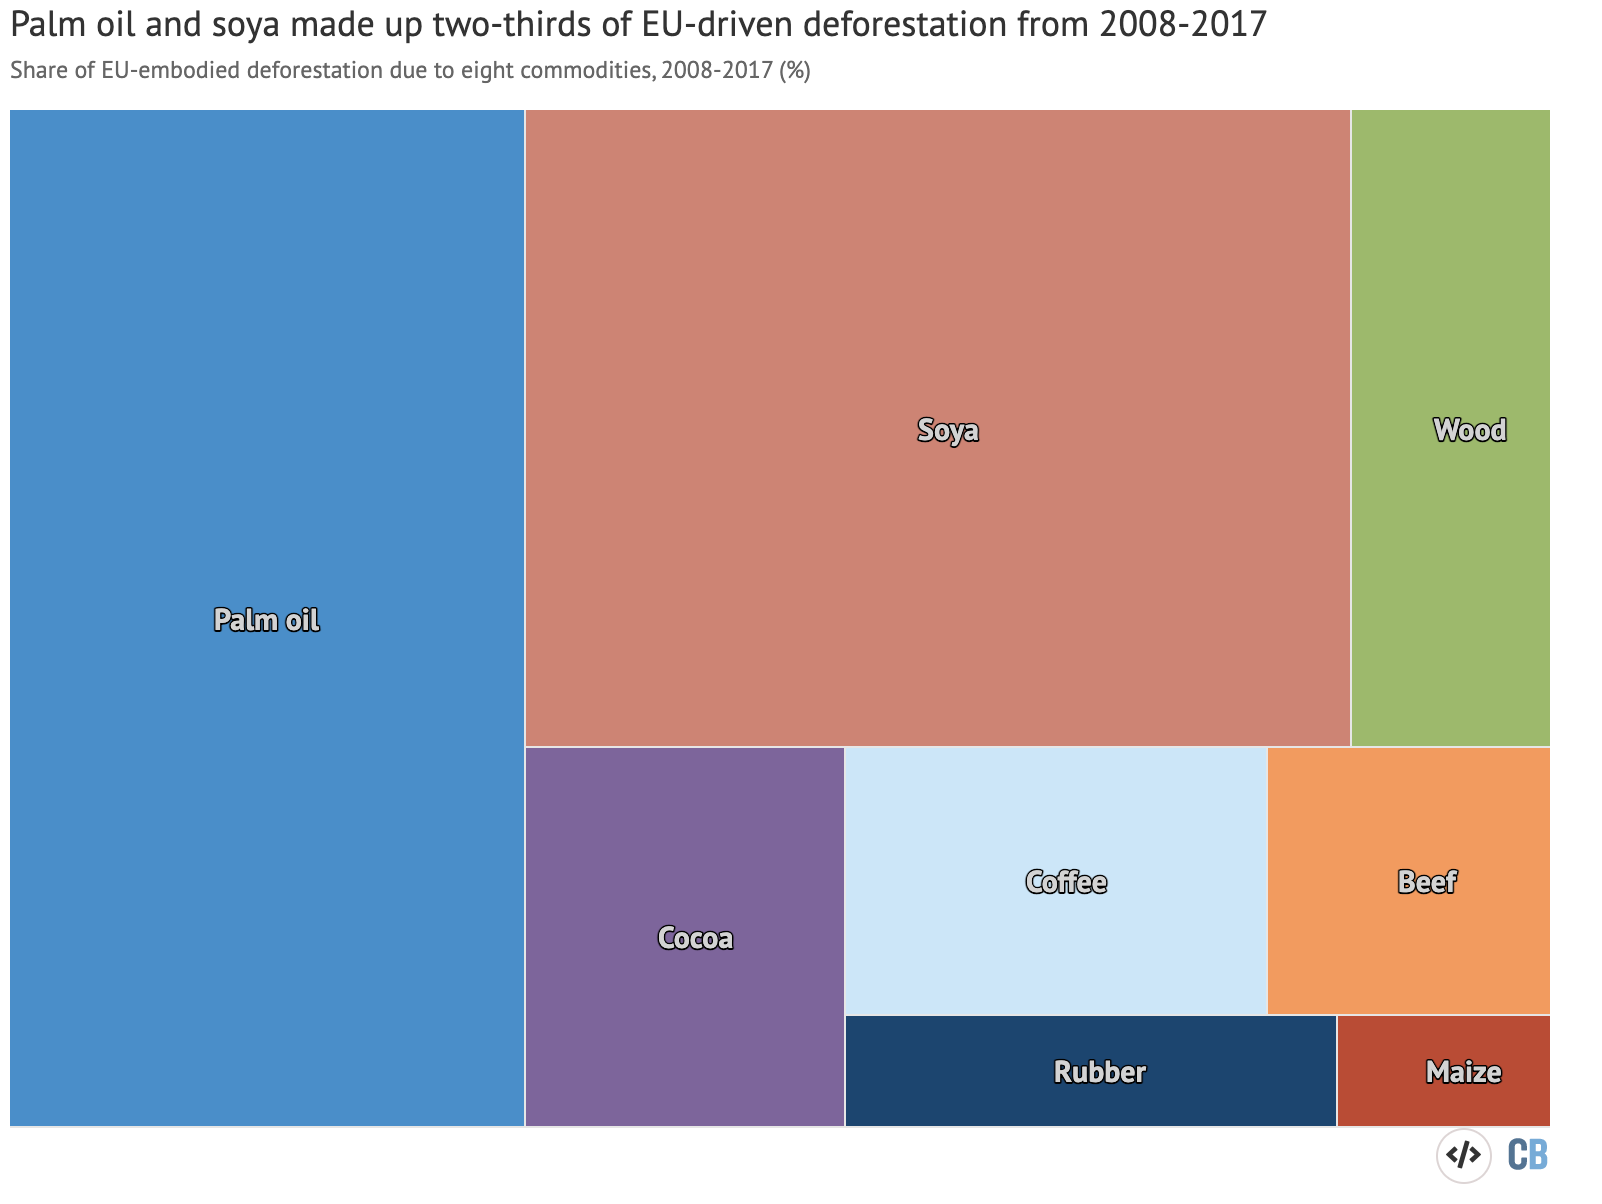 Đóng góp của tám mặt hàng chính vào nạn phá rừng do EU gây ra từ năm 2008 đến năm 2017. Phần trăm cổ phần được hiển thị cho dầu cọ (xanh lam), đậu nành (đỏ), gỗ (xanh lá cây), ca cao (tím), cà phê (xanh nhạt), thịt bò (cam ), cao su (xanh đậm) và ngô (đỏ đậm). Nguồn: Ủy ban Châu Âu (2021)